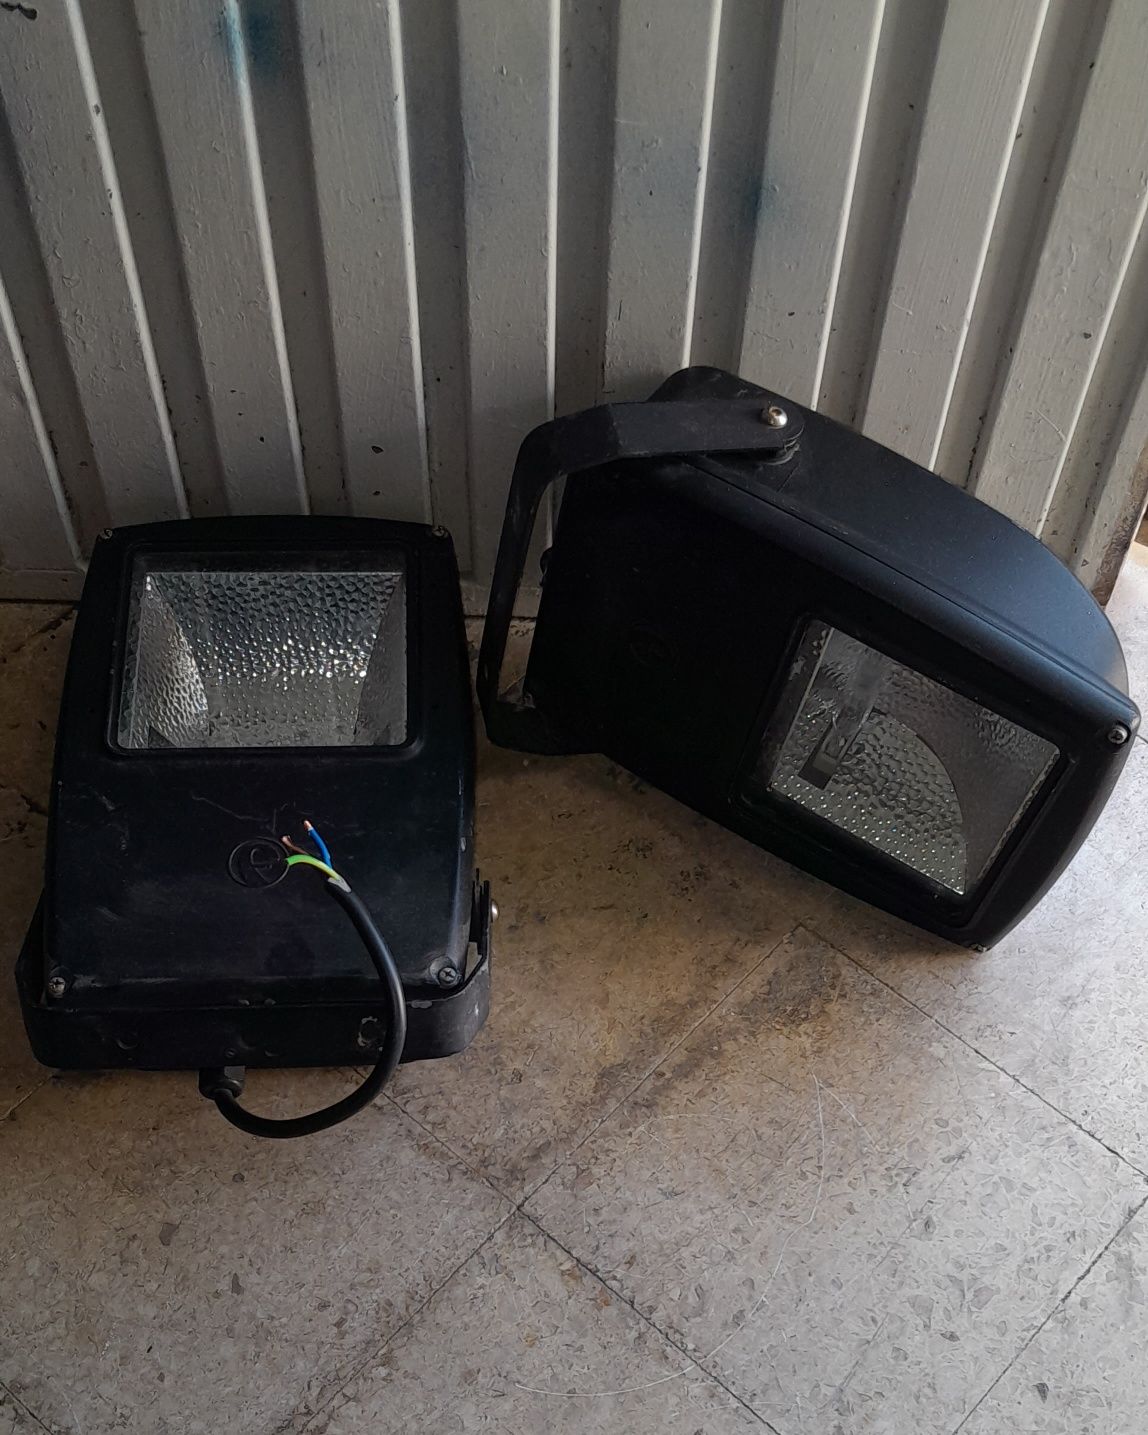 2 projetores usados